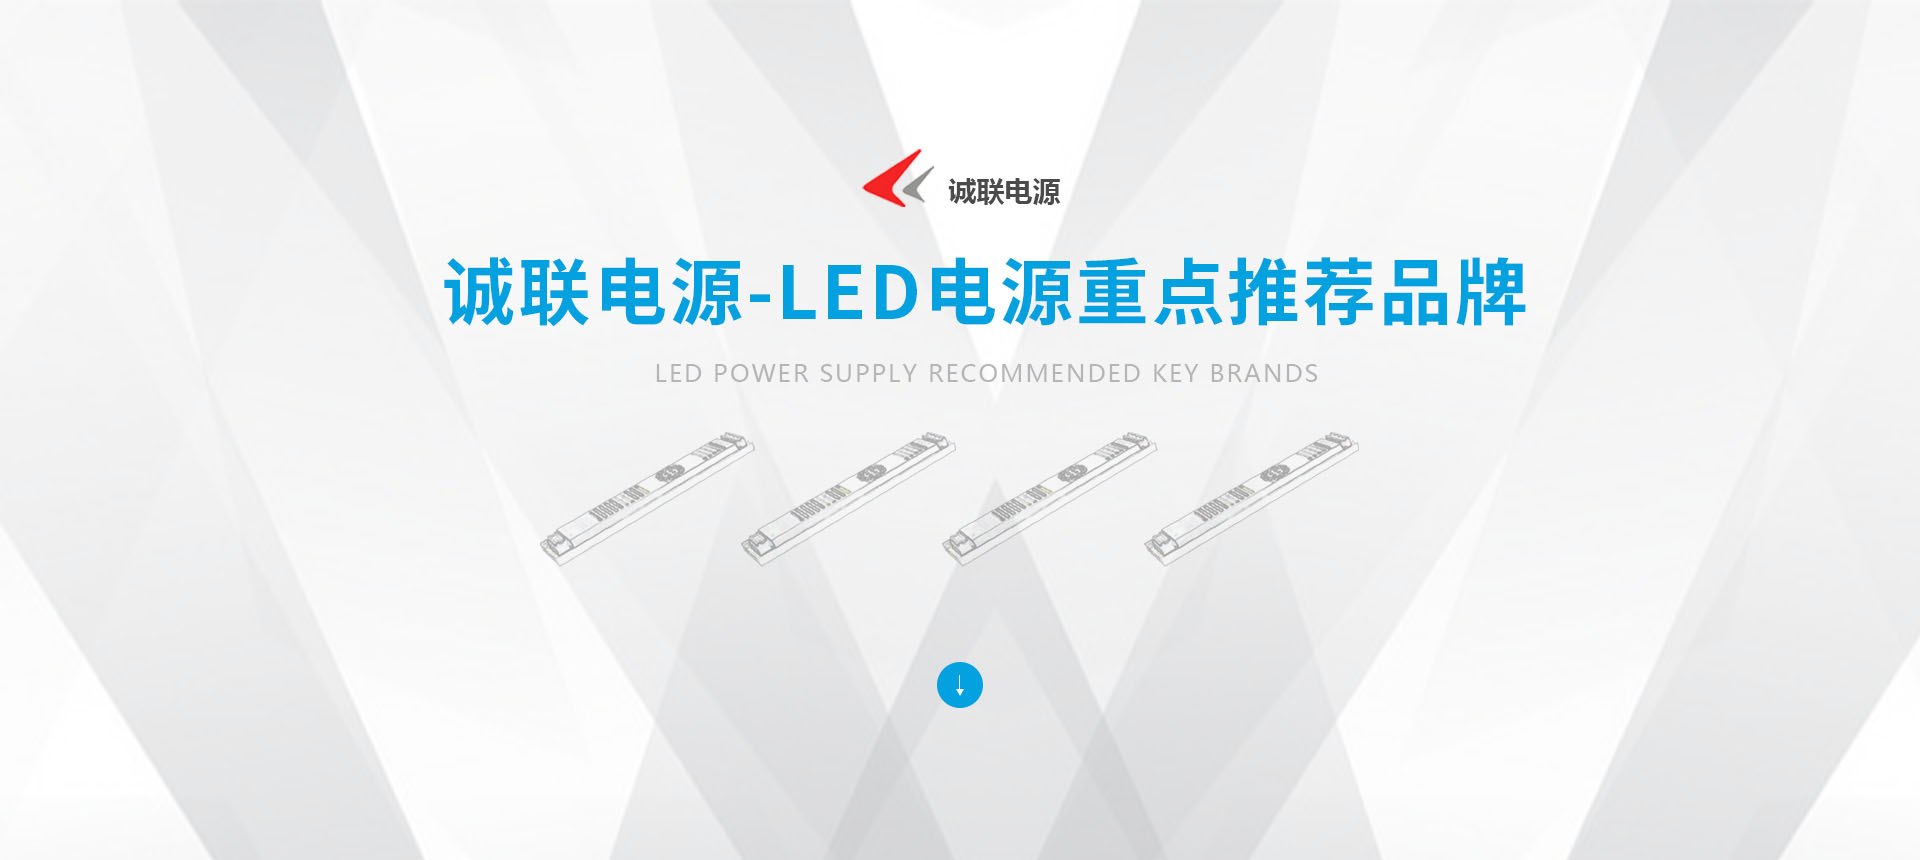 诚联电源-LED电源重点推荐品牌